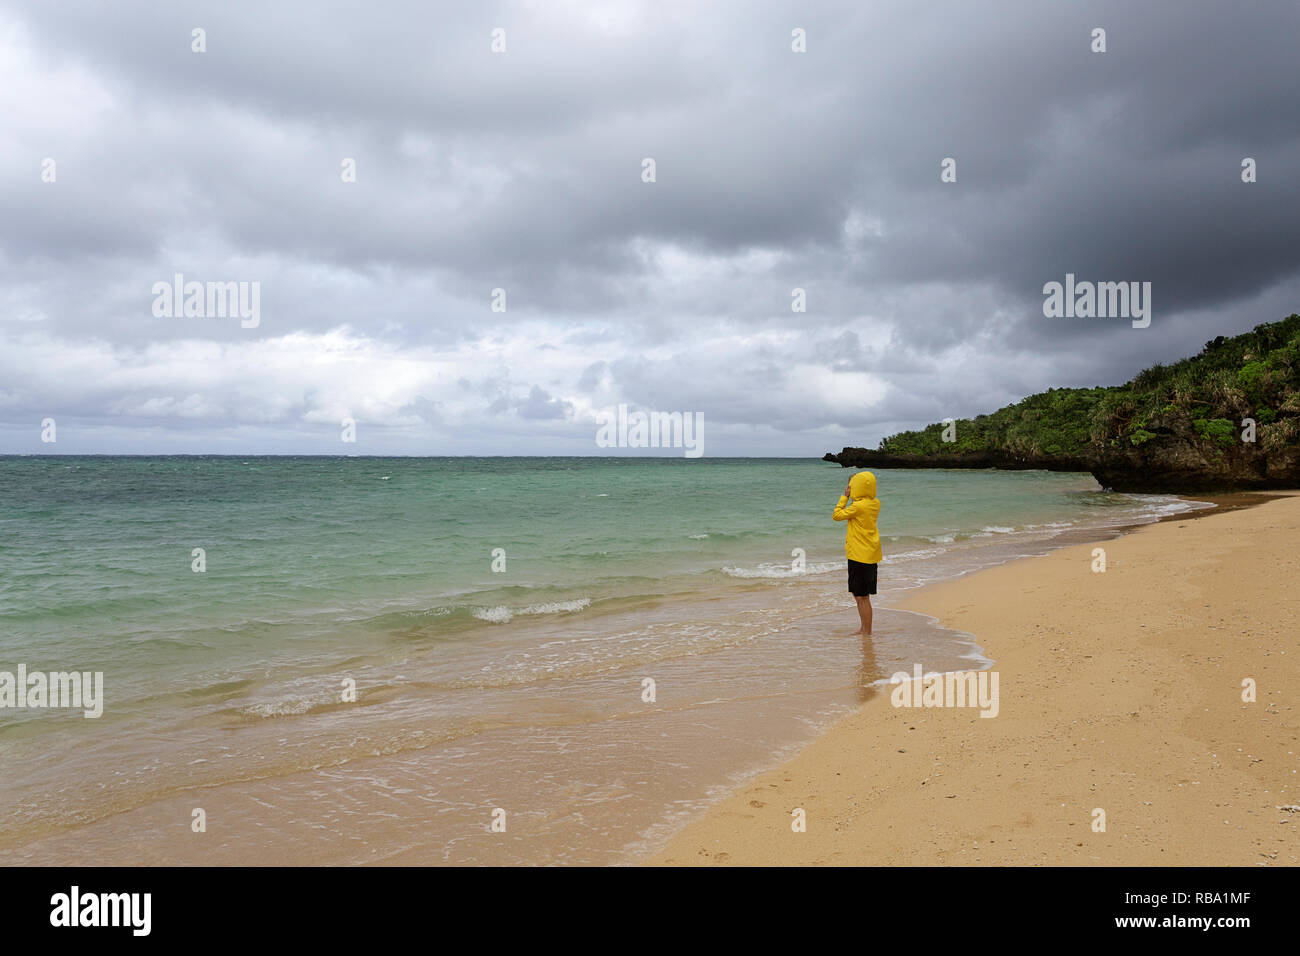 Jeune femme en veste jaune debout, marcher dans l'eau peu profonde sur une belle plage isolée, Ishigaki, Japon Banque D'Images